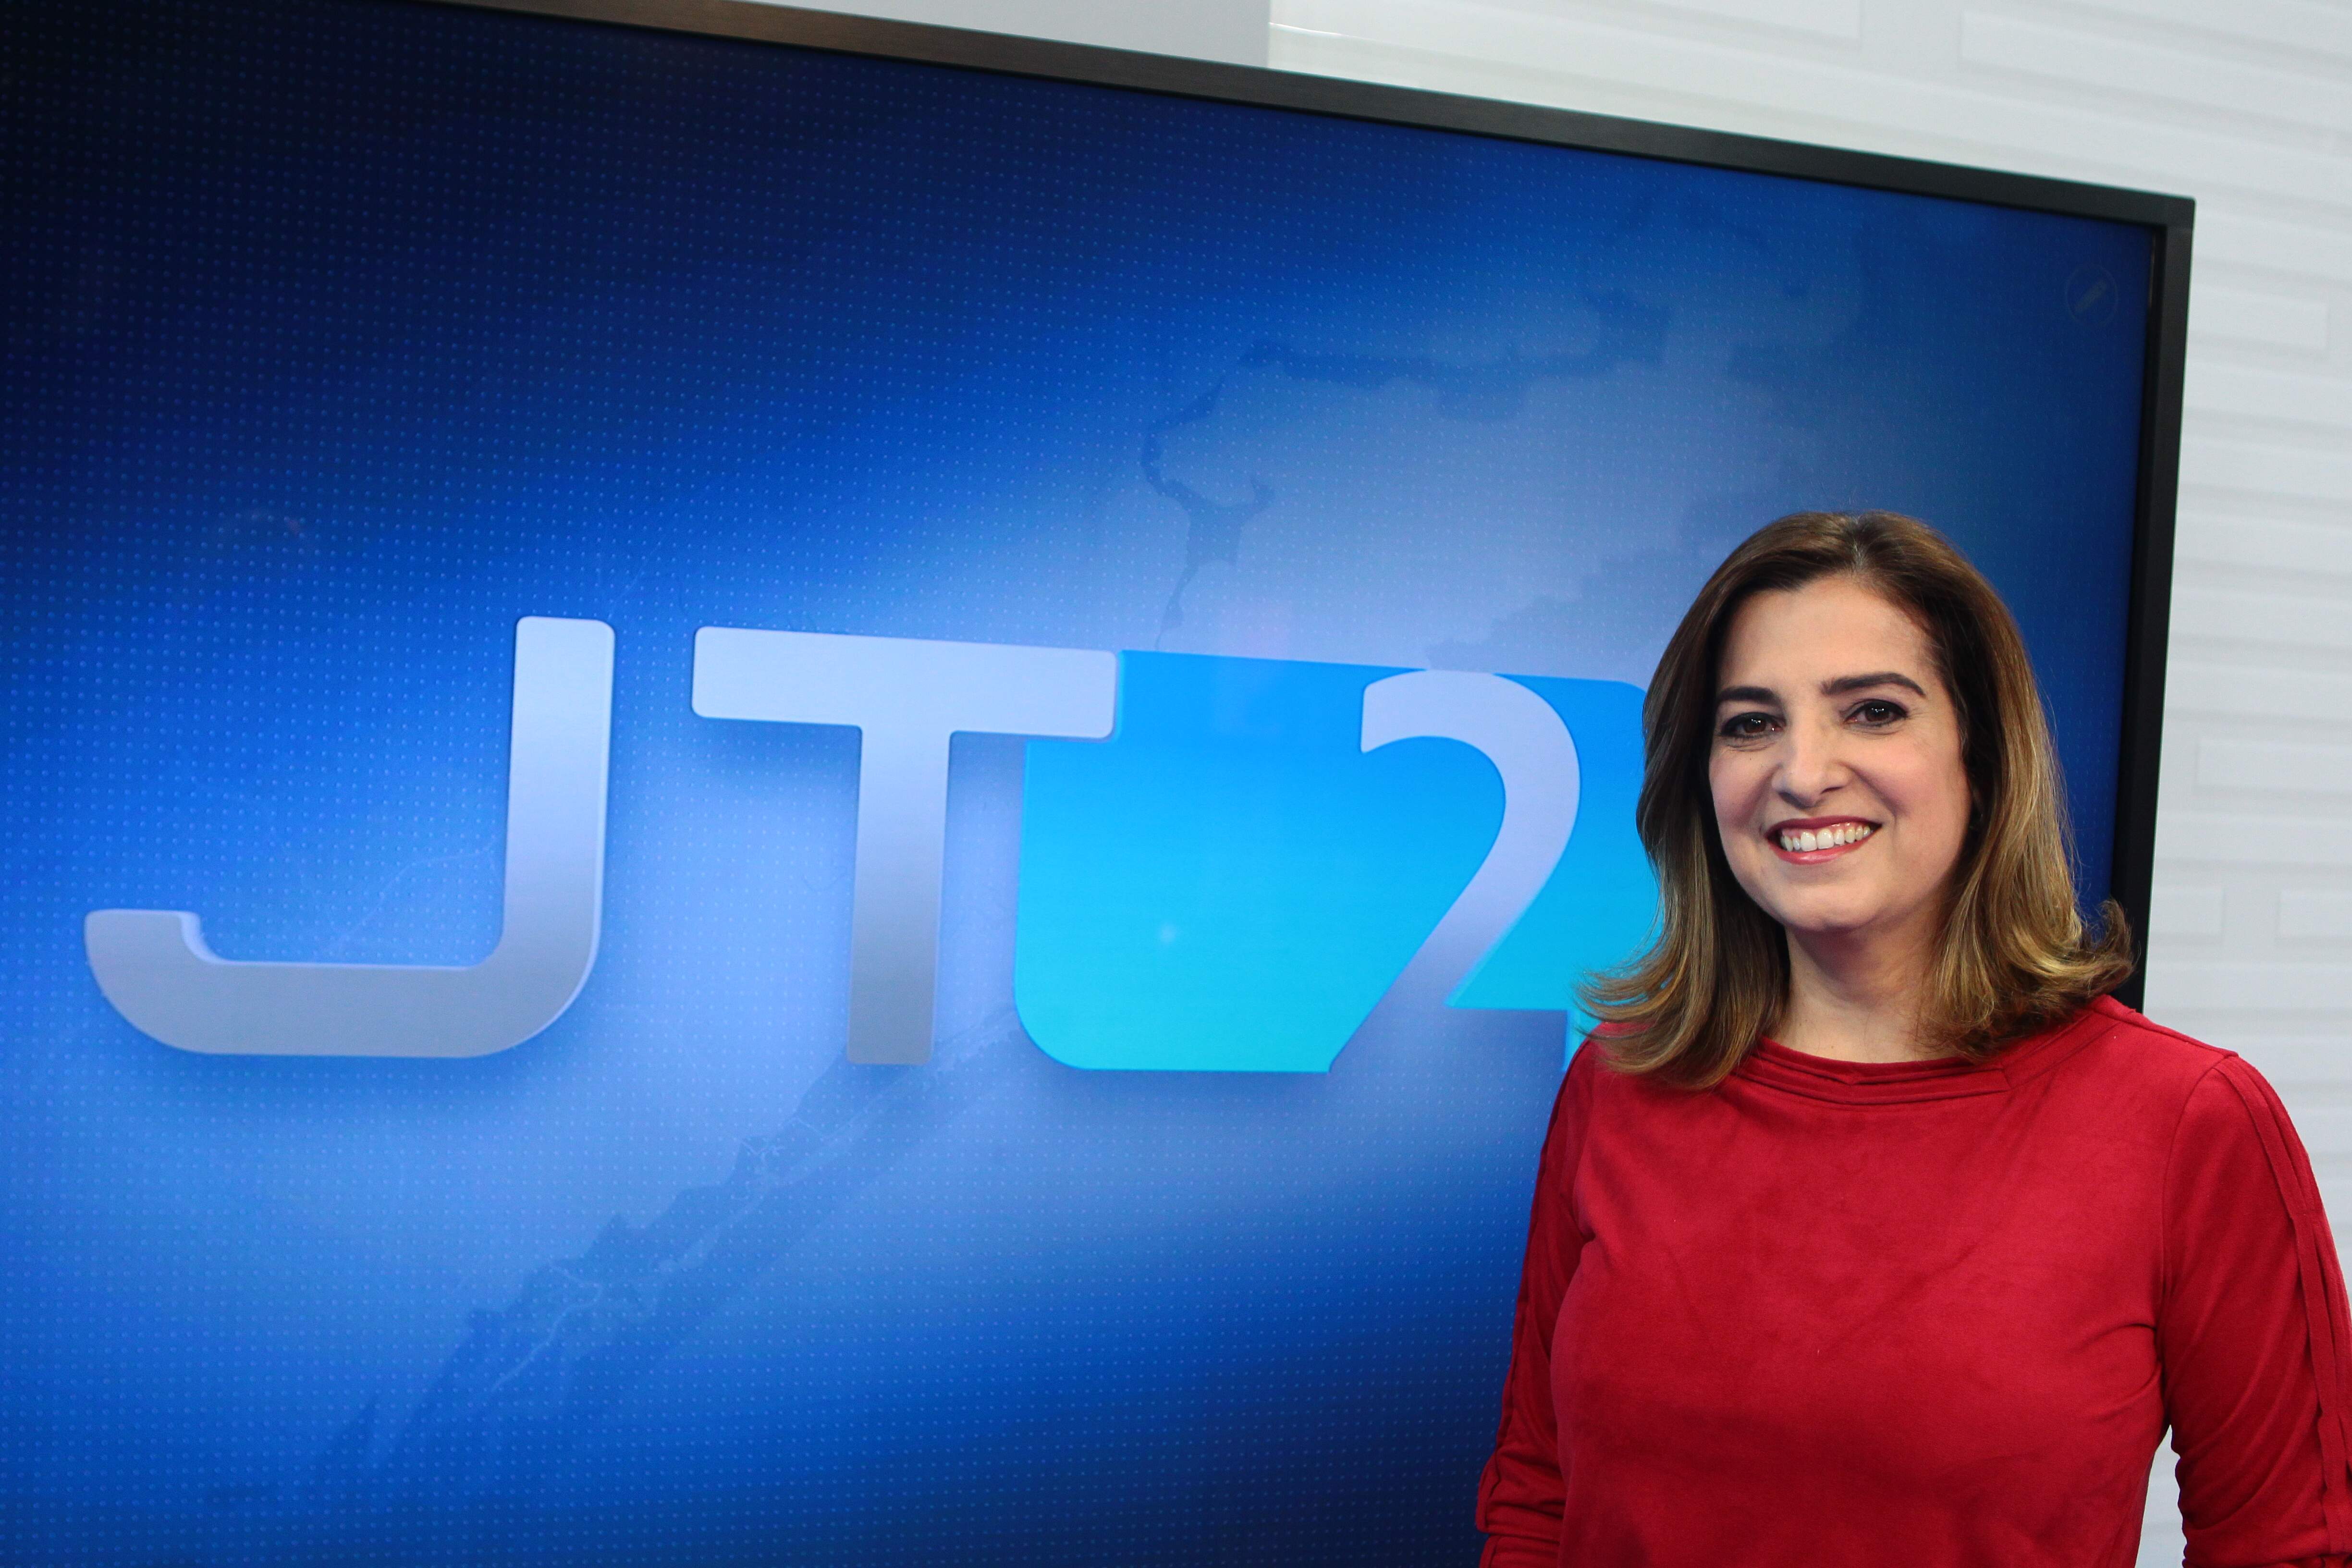 Melissa Paiva, apresentadora do JT2, está há 21 anos na TV Tribuna